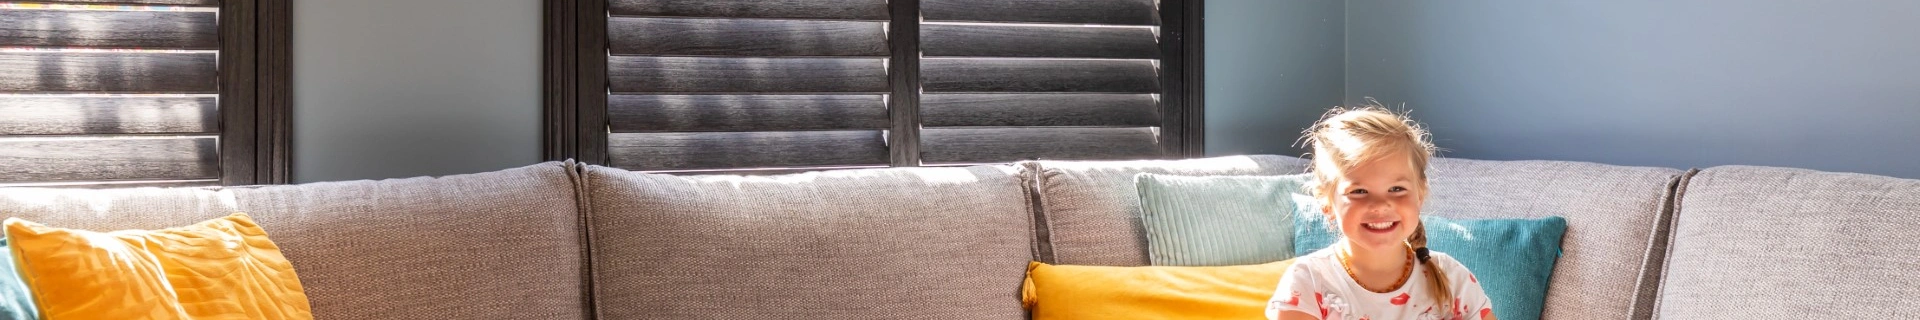 Zwarte houtkleurige shutters in woonkamer